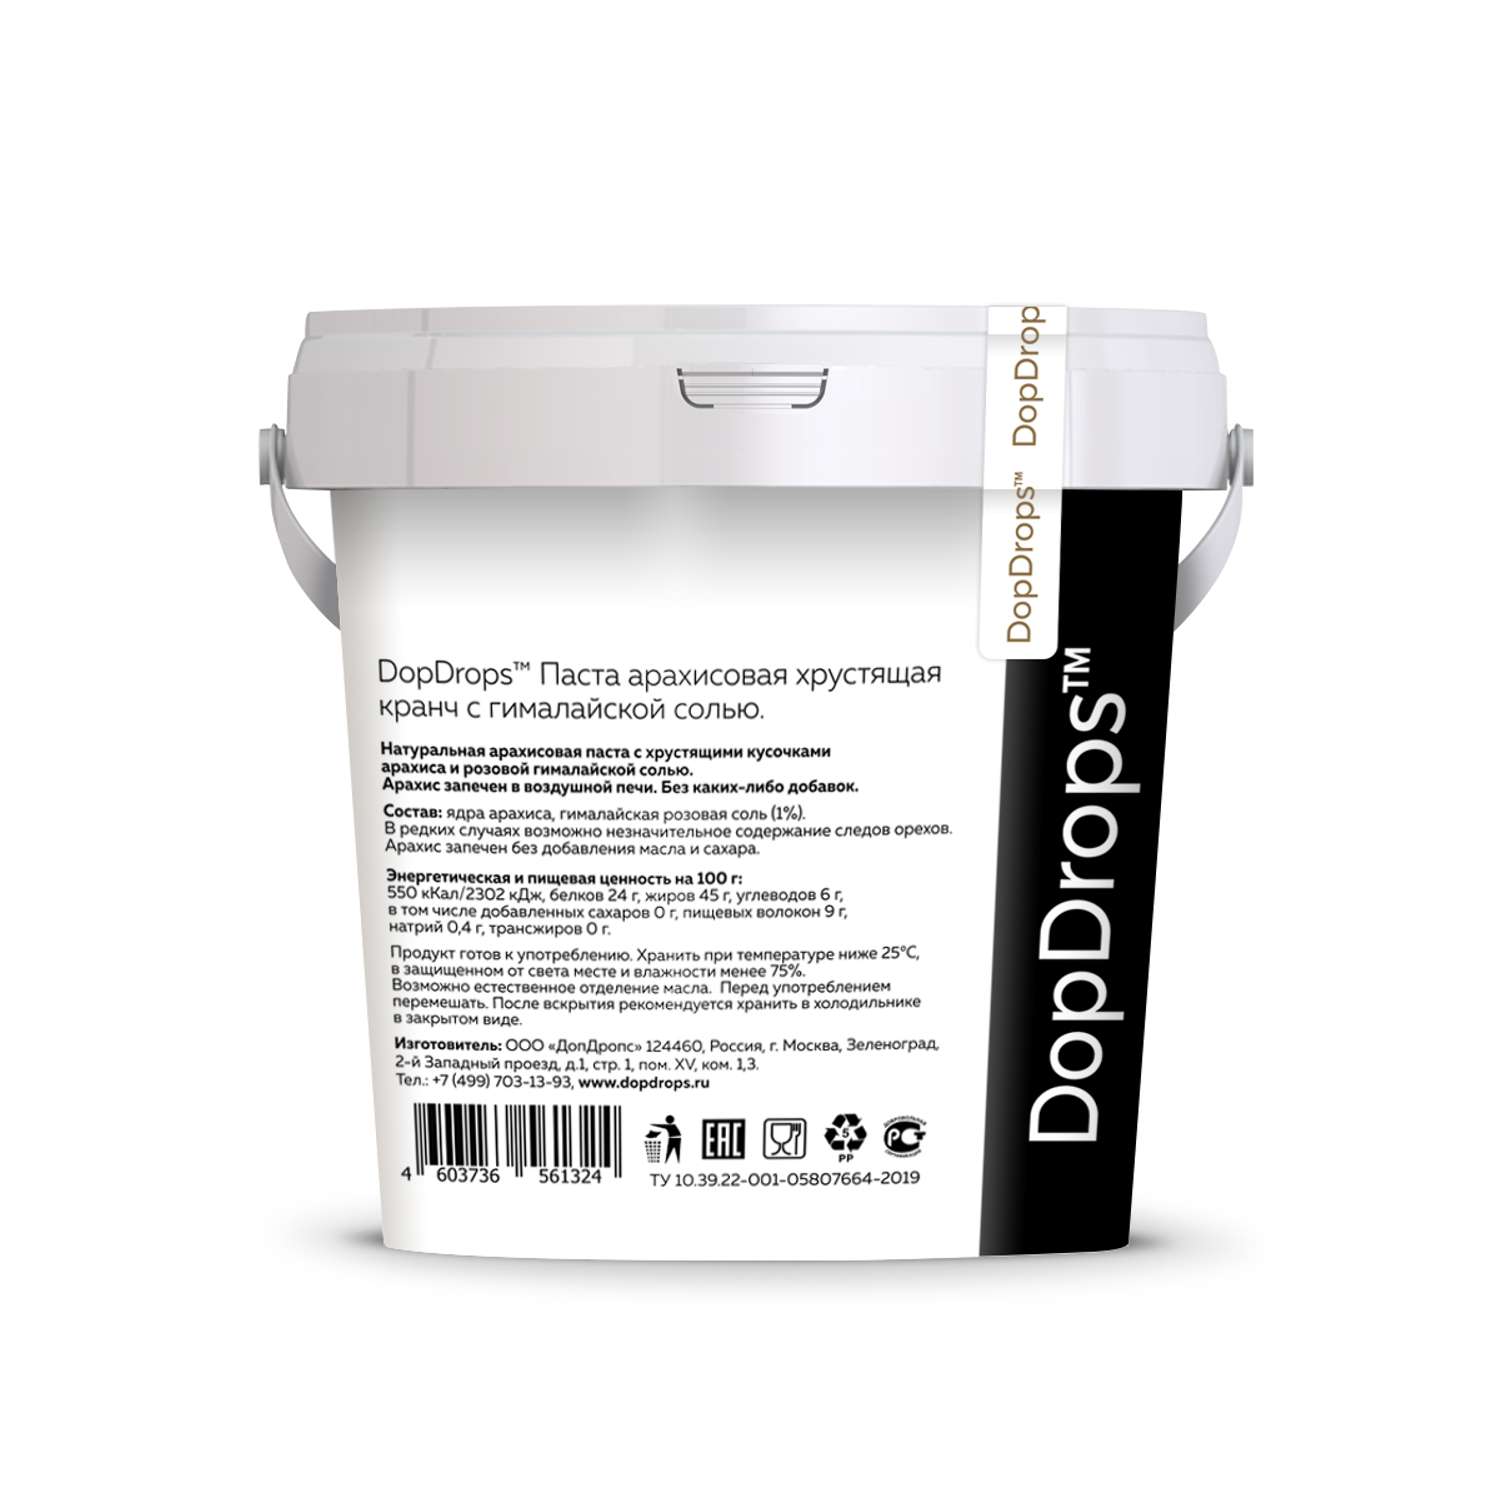 Арахисовая паста DopDrops хрустящая с гималайской солью 2 по 1 кг - фото 2